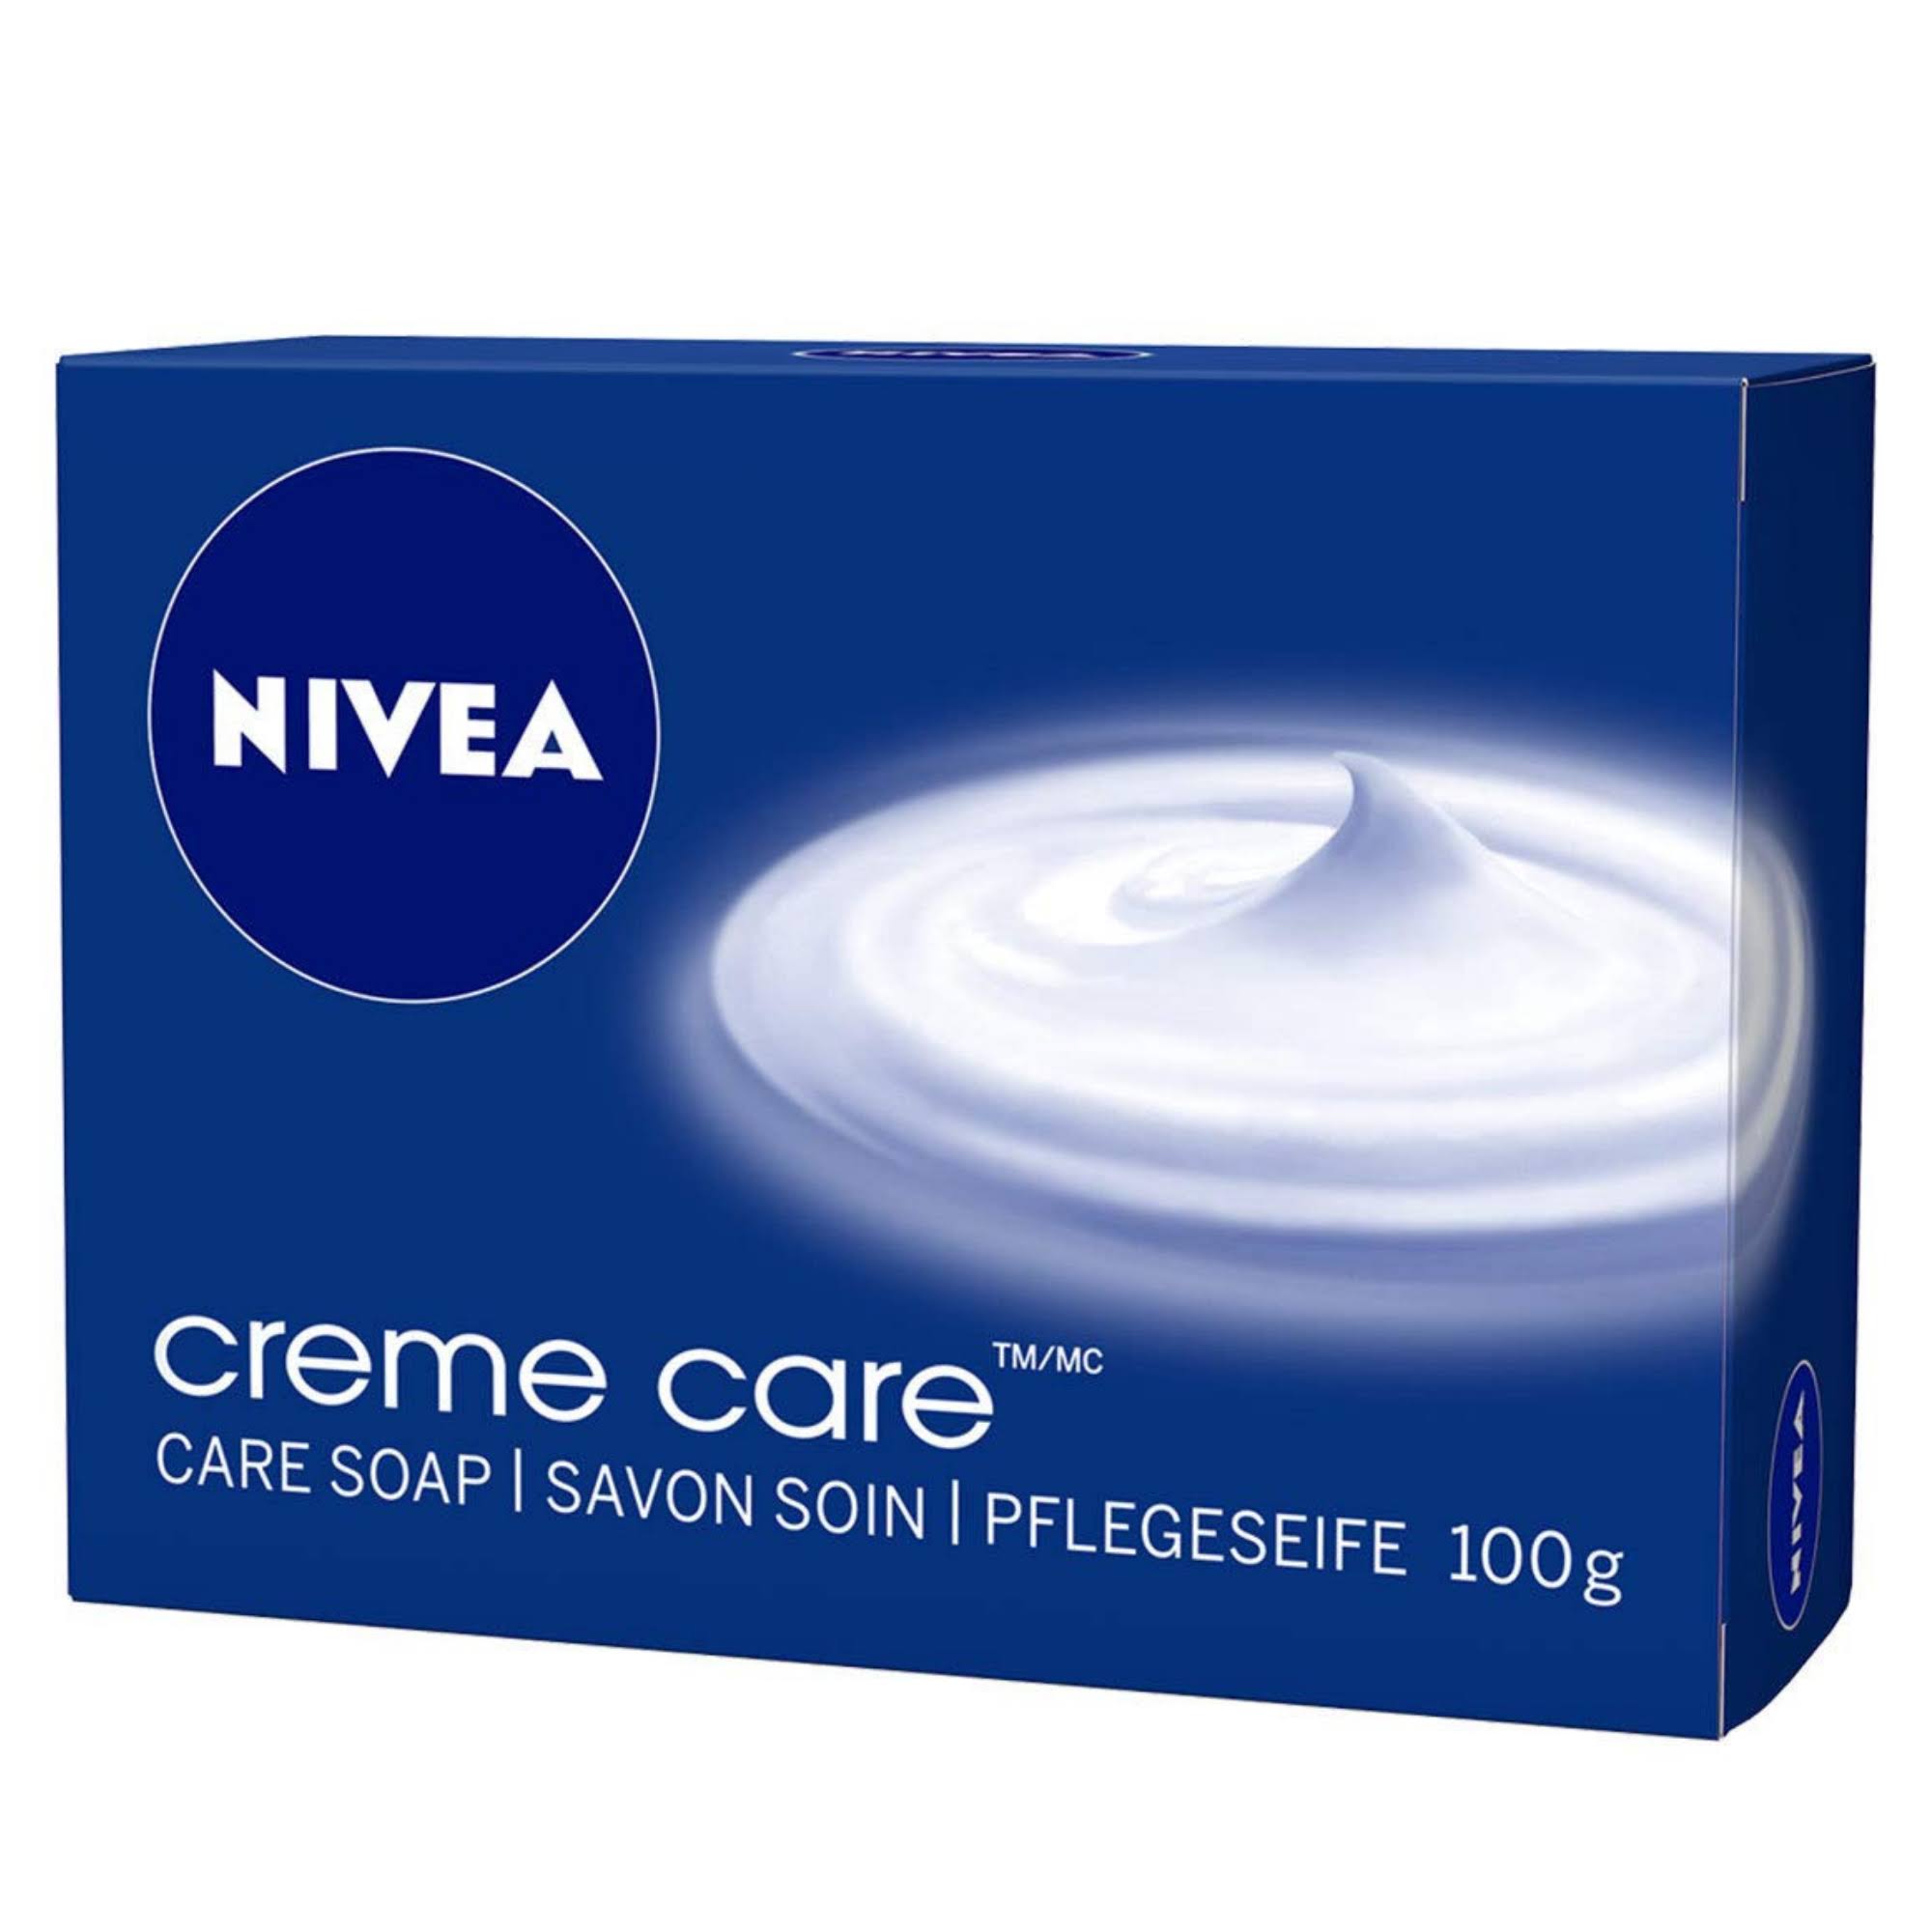 Nivea Creme Care Bar Soap 3.5 oz